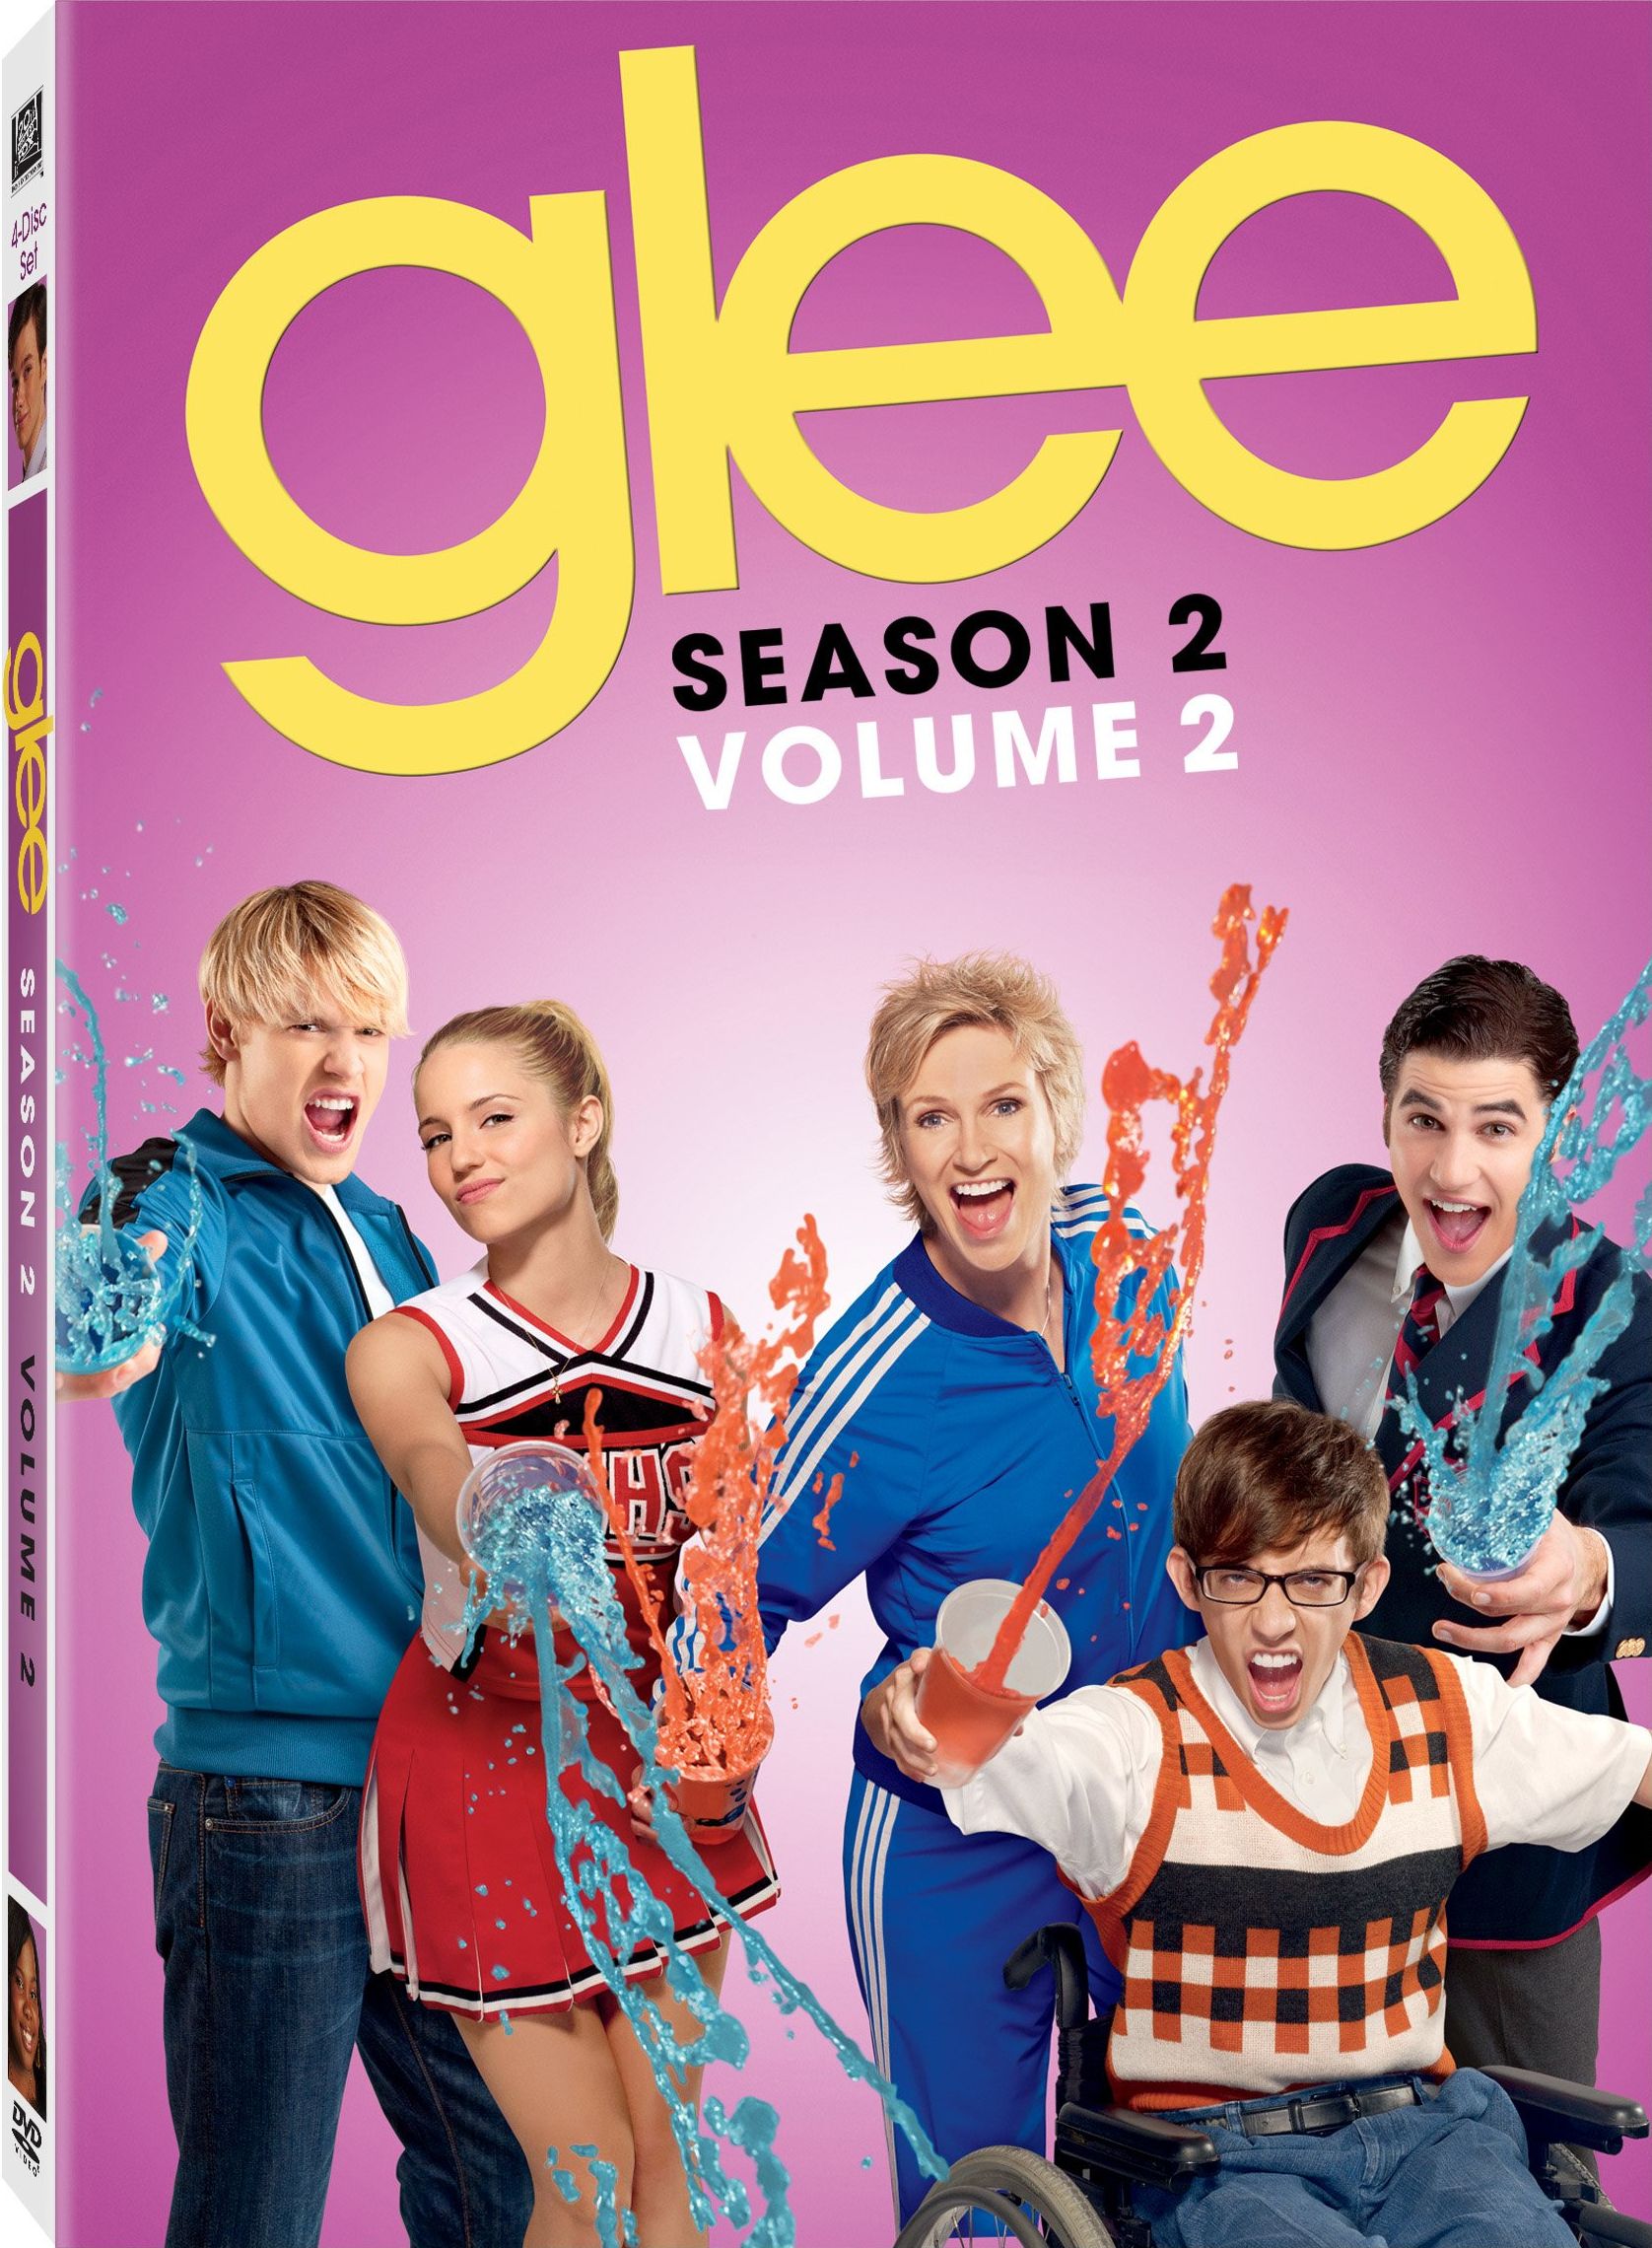 Glee season 5 dvd release date